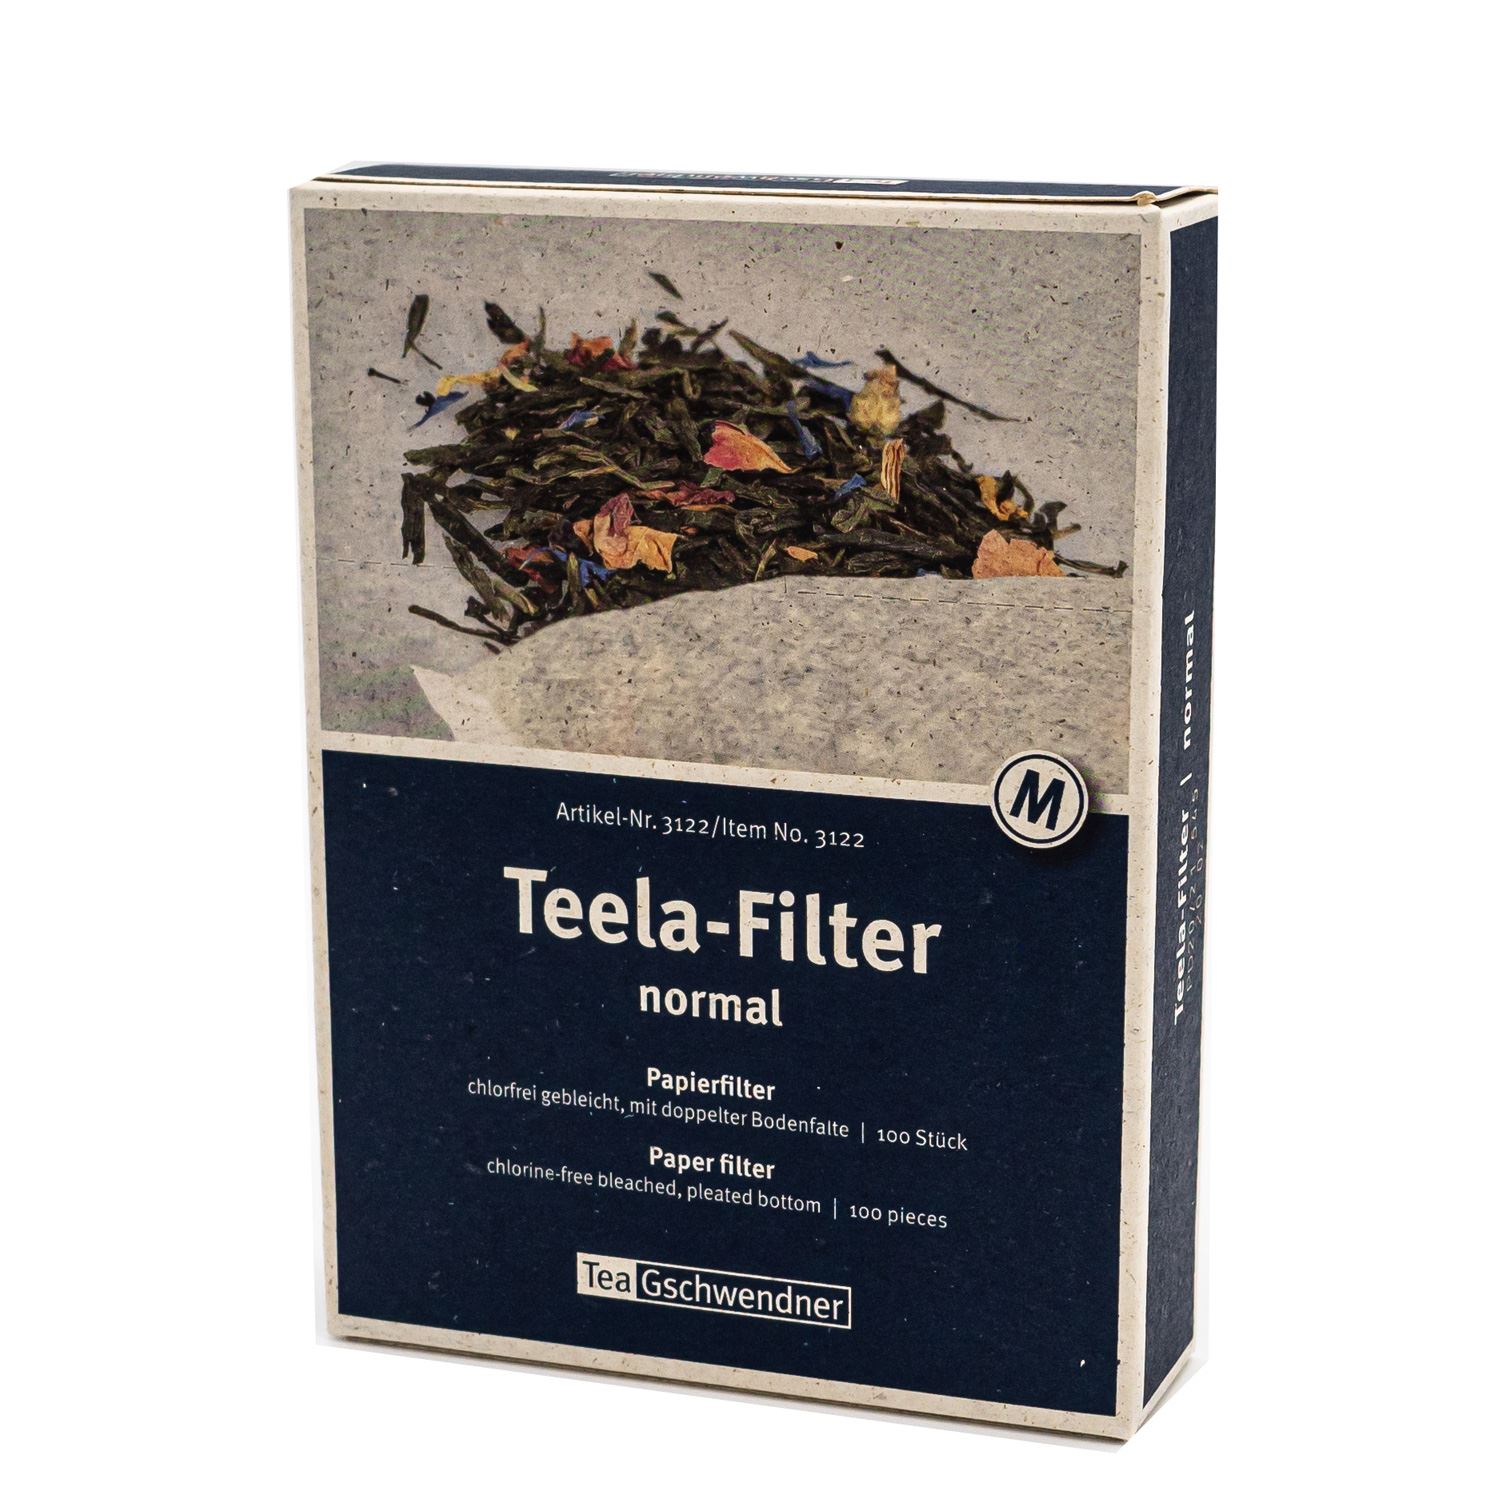 Teela-Filter normal sauerstoffgebleicht